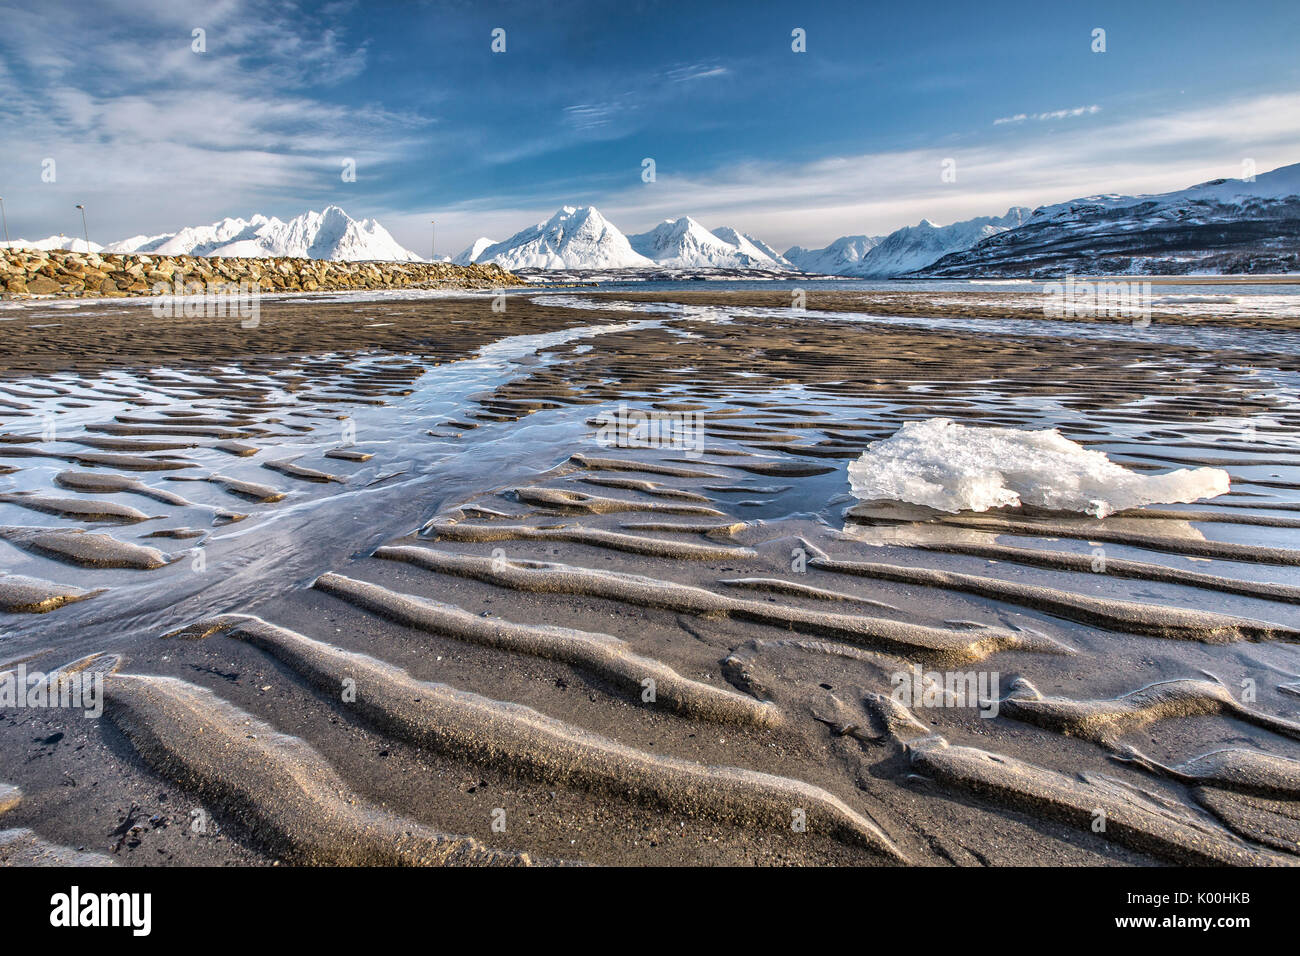 La plage de sable de glace entourant les montagnes enneigées des Alpes de Lyngen Breivikeidet Tromsø Norvège Laponie Europe Banque D'Images